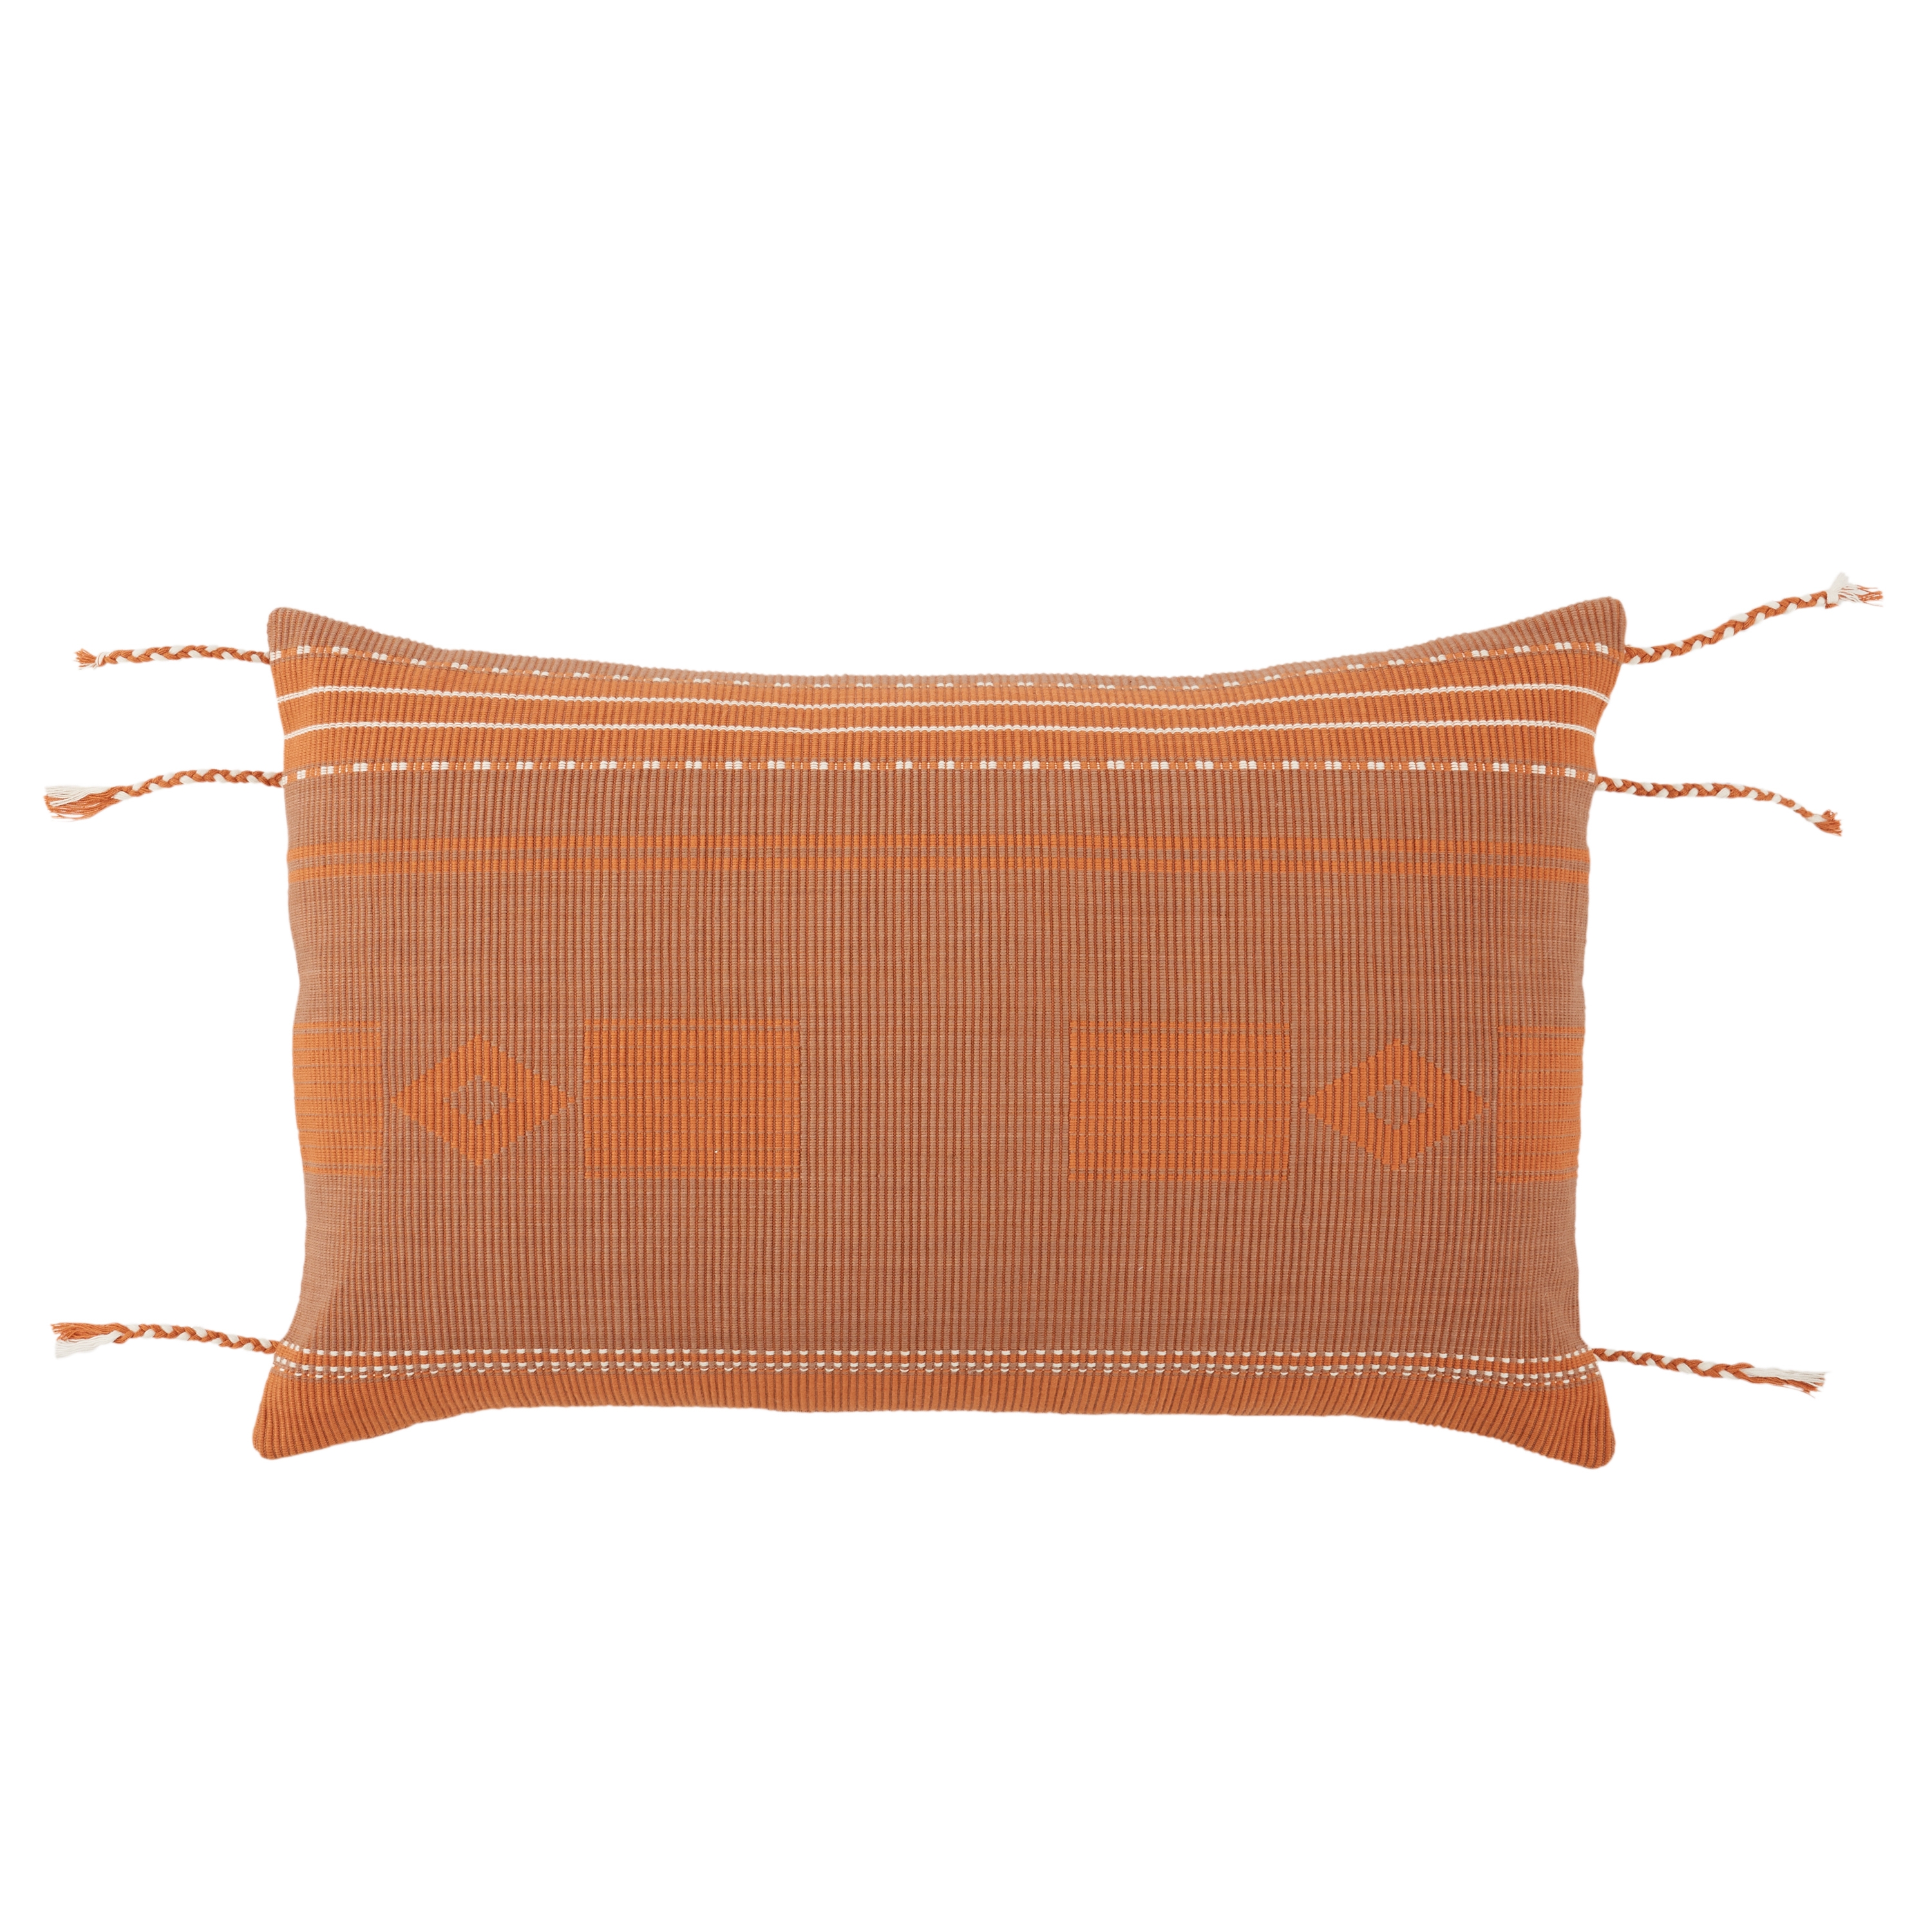 Bohdi Lumbar Pillow, Terracotta, 21" x 13" - Image 0